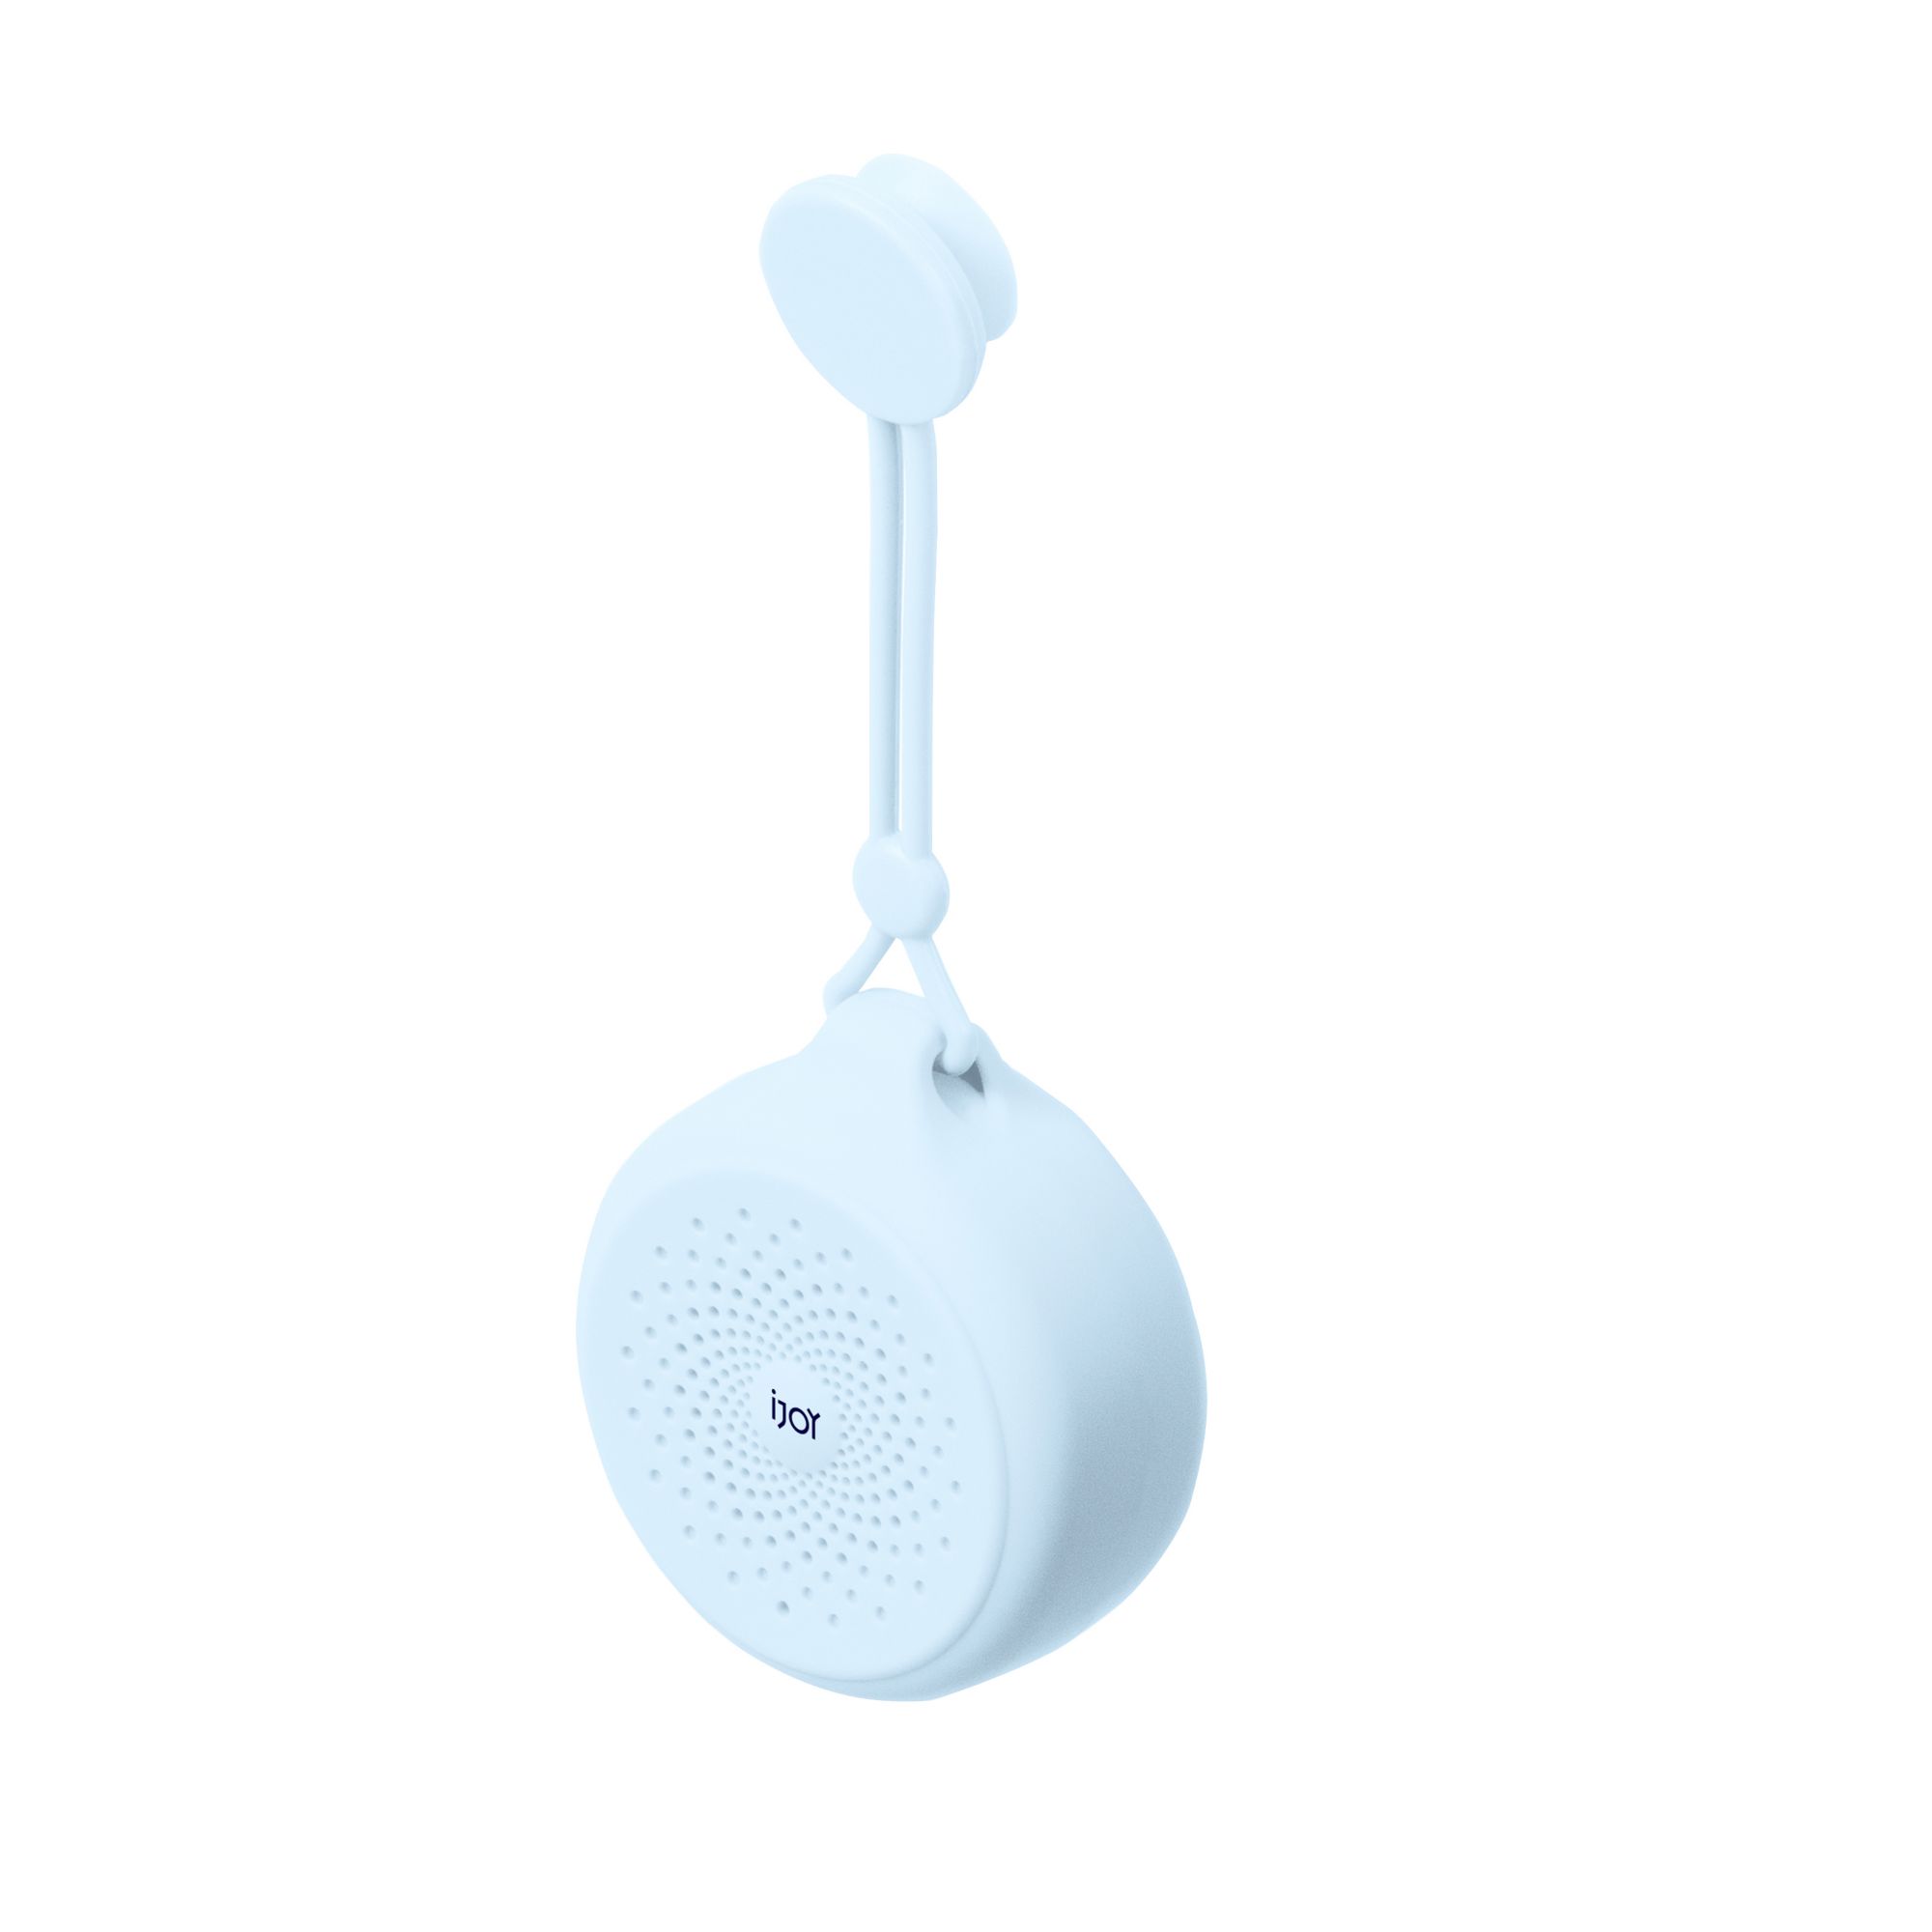 iJoy Mist IPX4 Bluetooth Shower Speaker - Blue